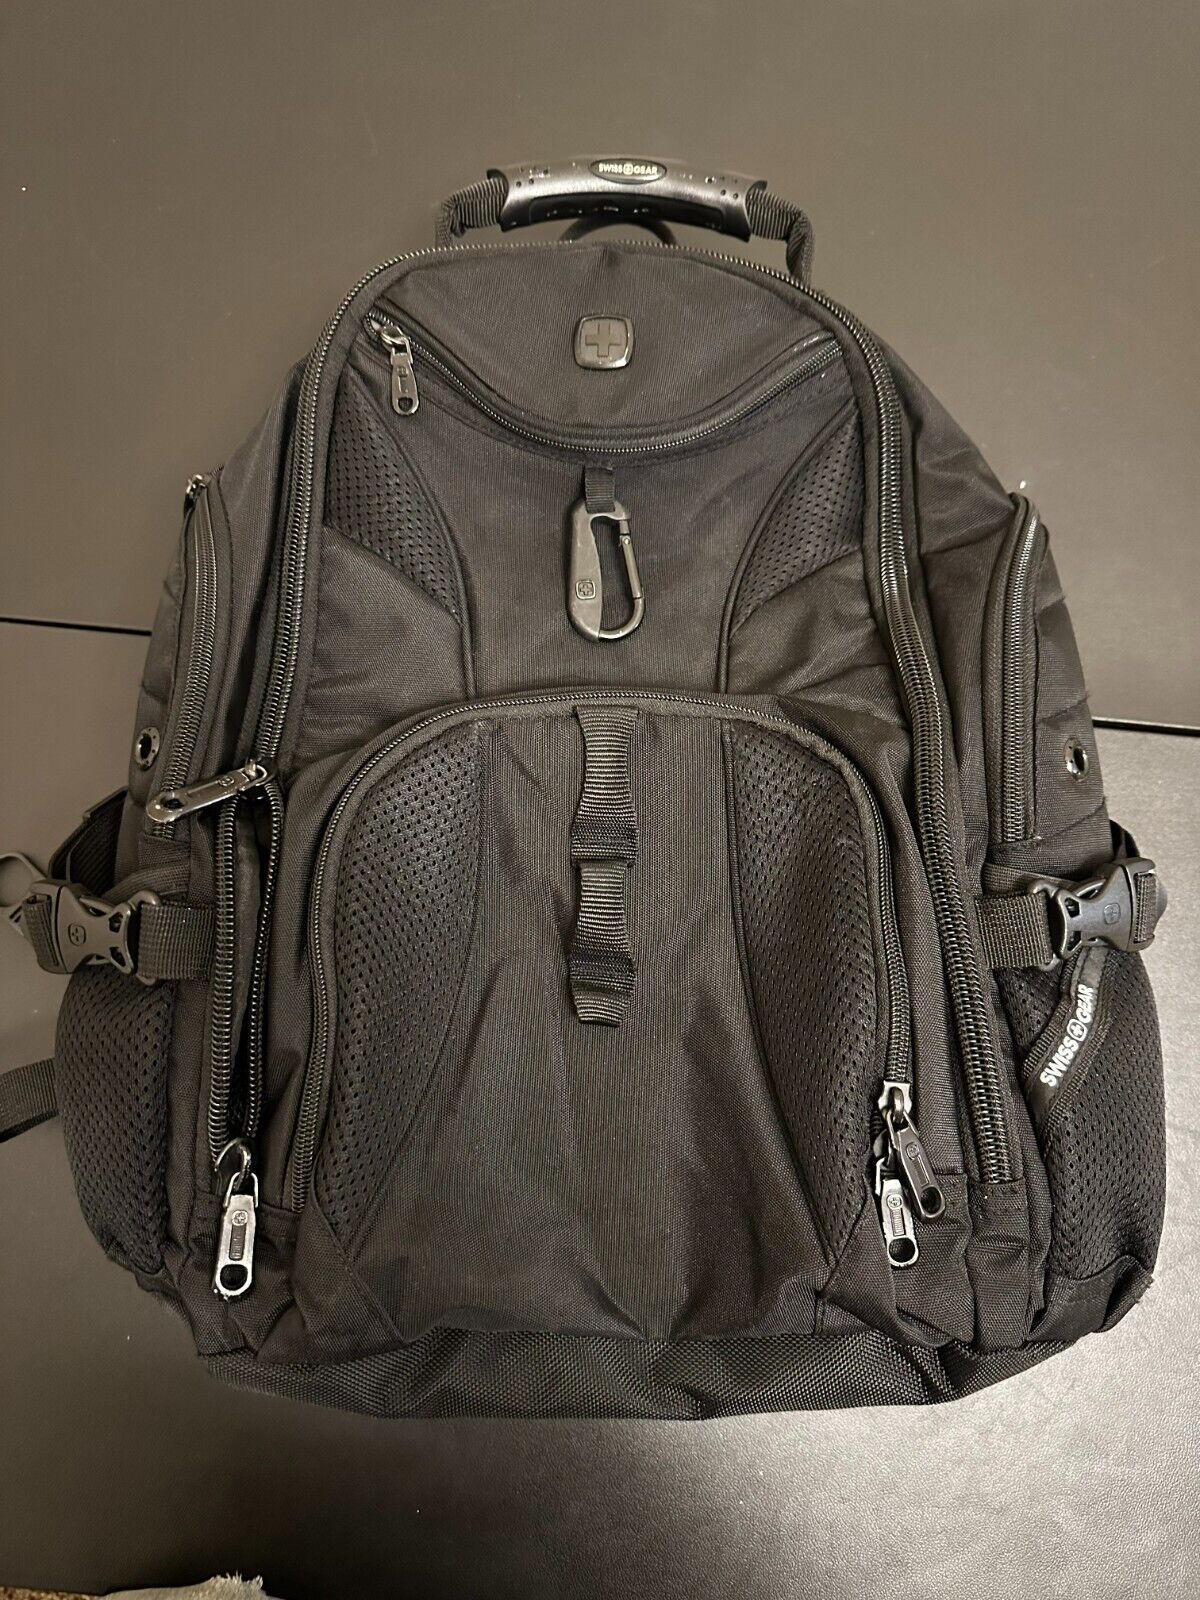 Barely Used SWISSGEAR Travel Gear 1900 Scan Smart TSA Laptop Backpack - Black